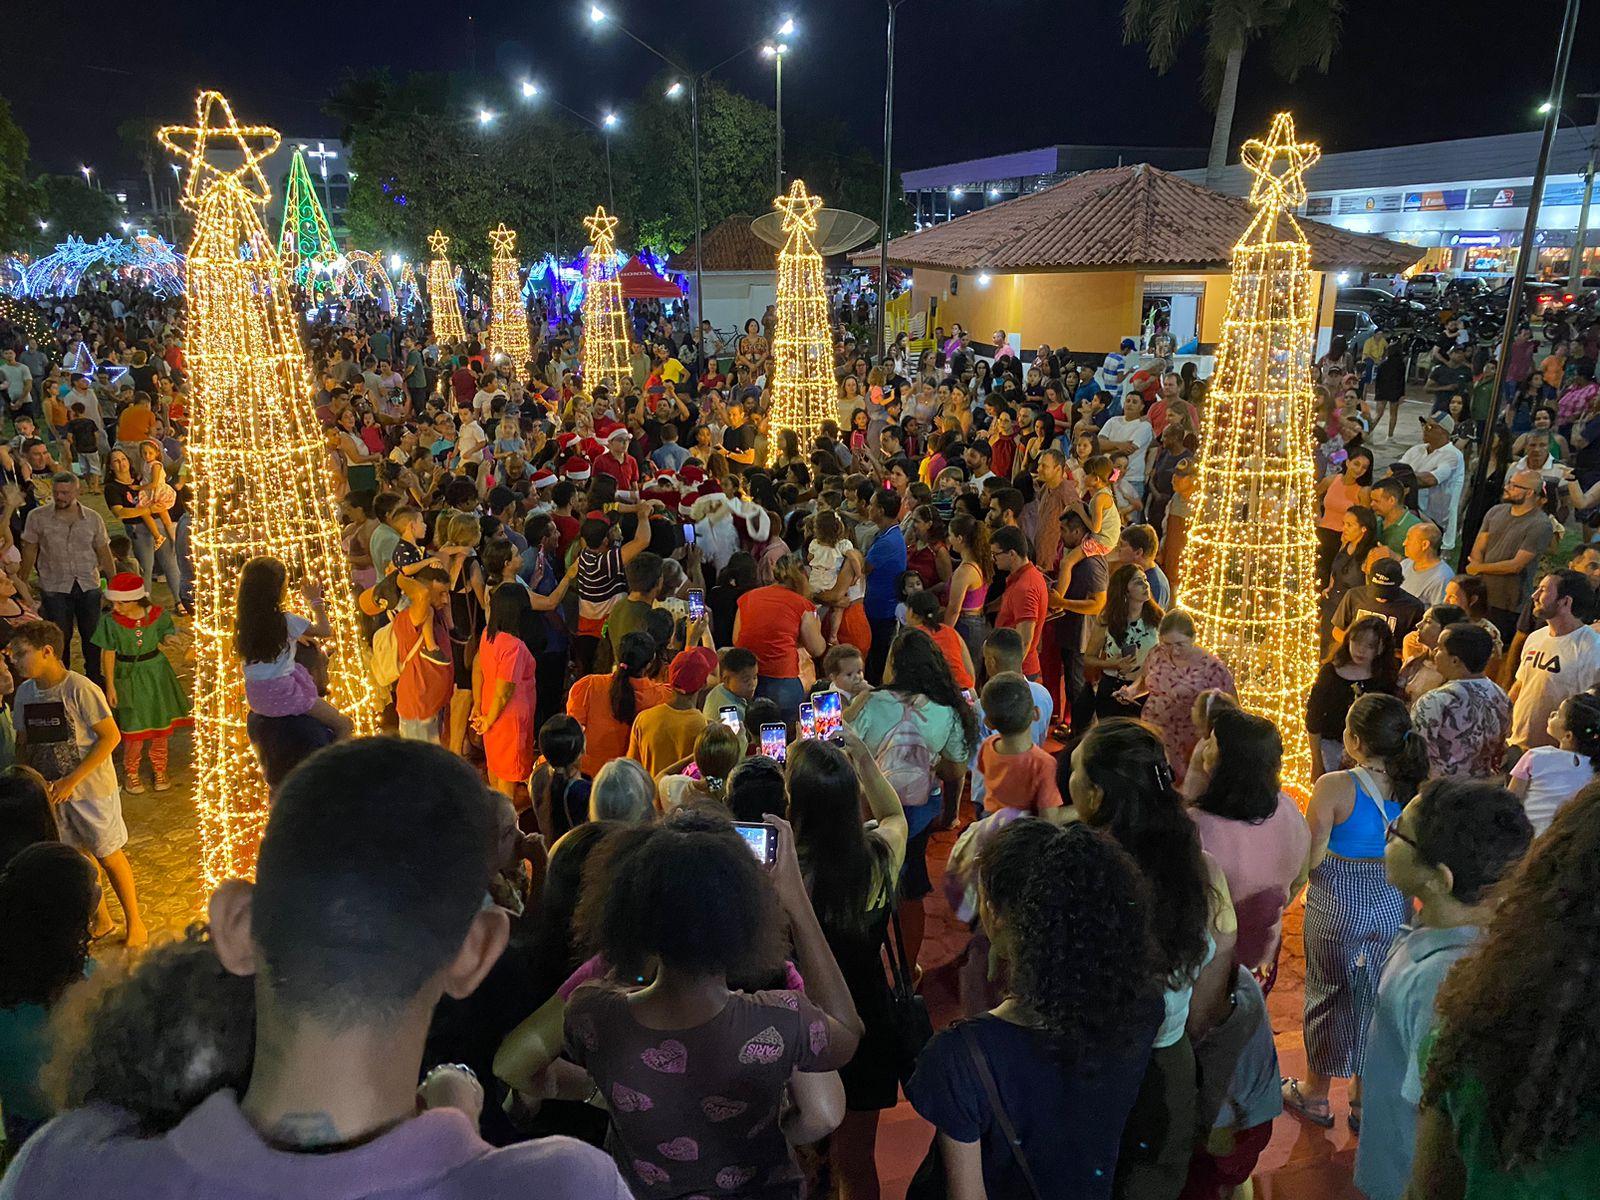 Praça Durvalino de Oliveira recebe o “Natal de Luz” em Rolim de Moura